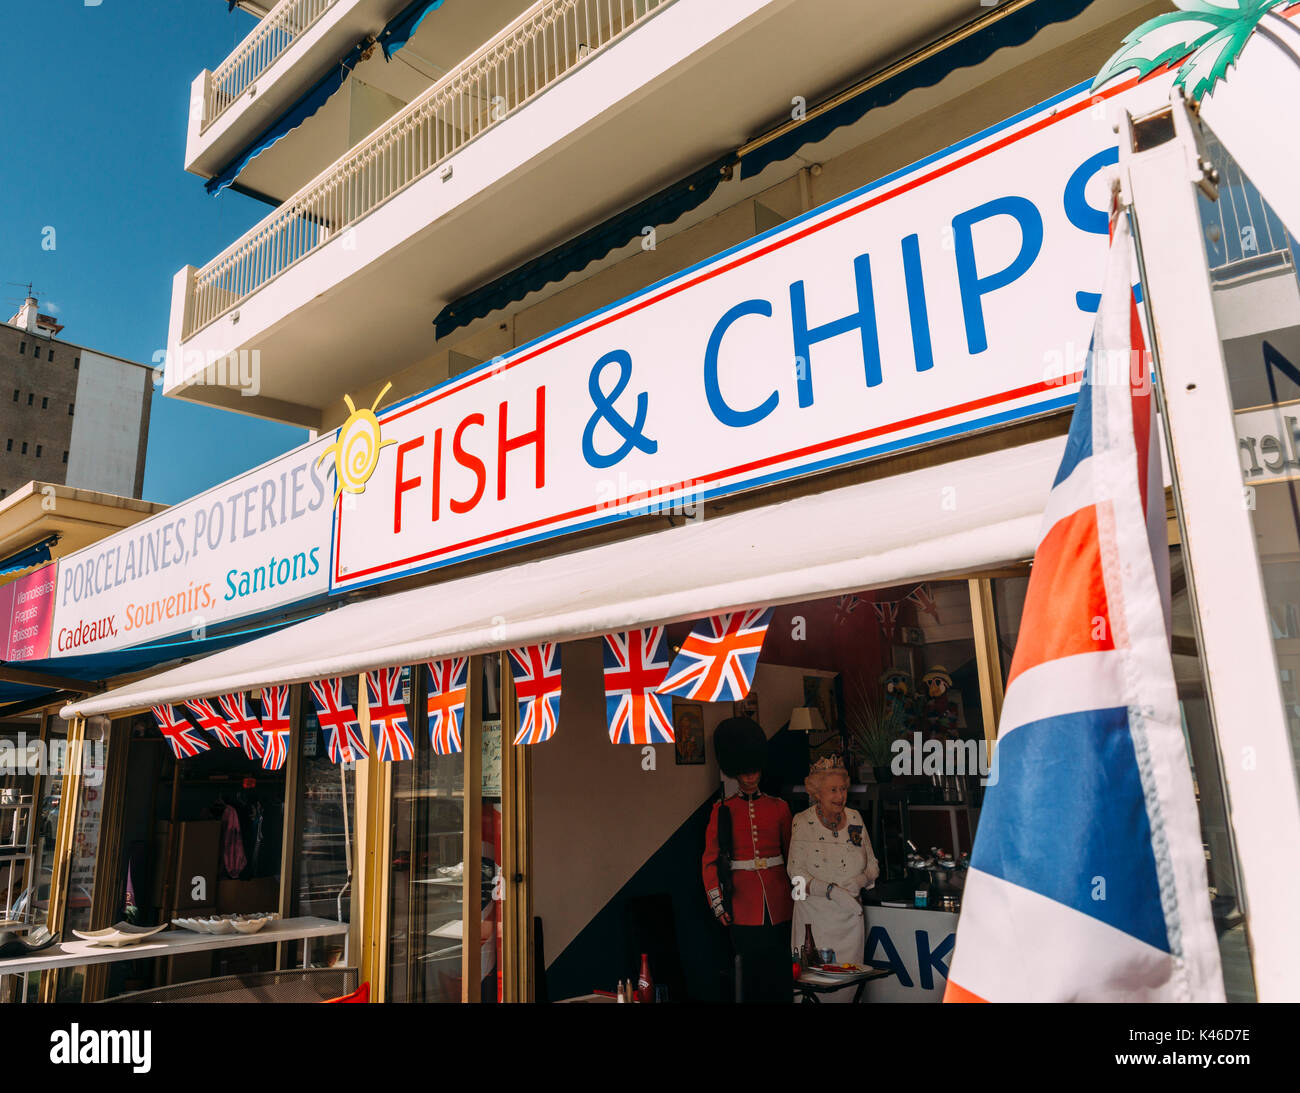 Fish & Chips shop in Juan les Pins, Cote d'Azur, France Stock Photo